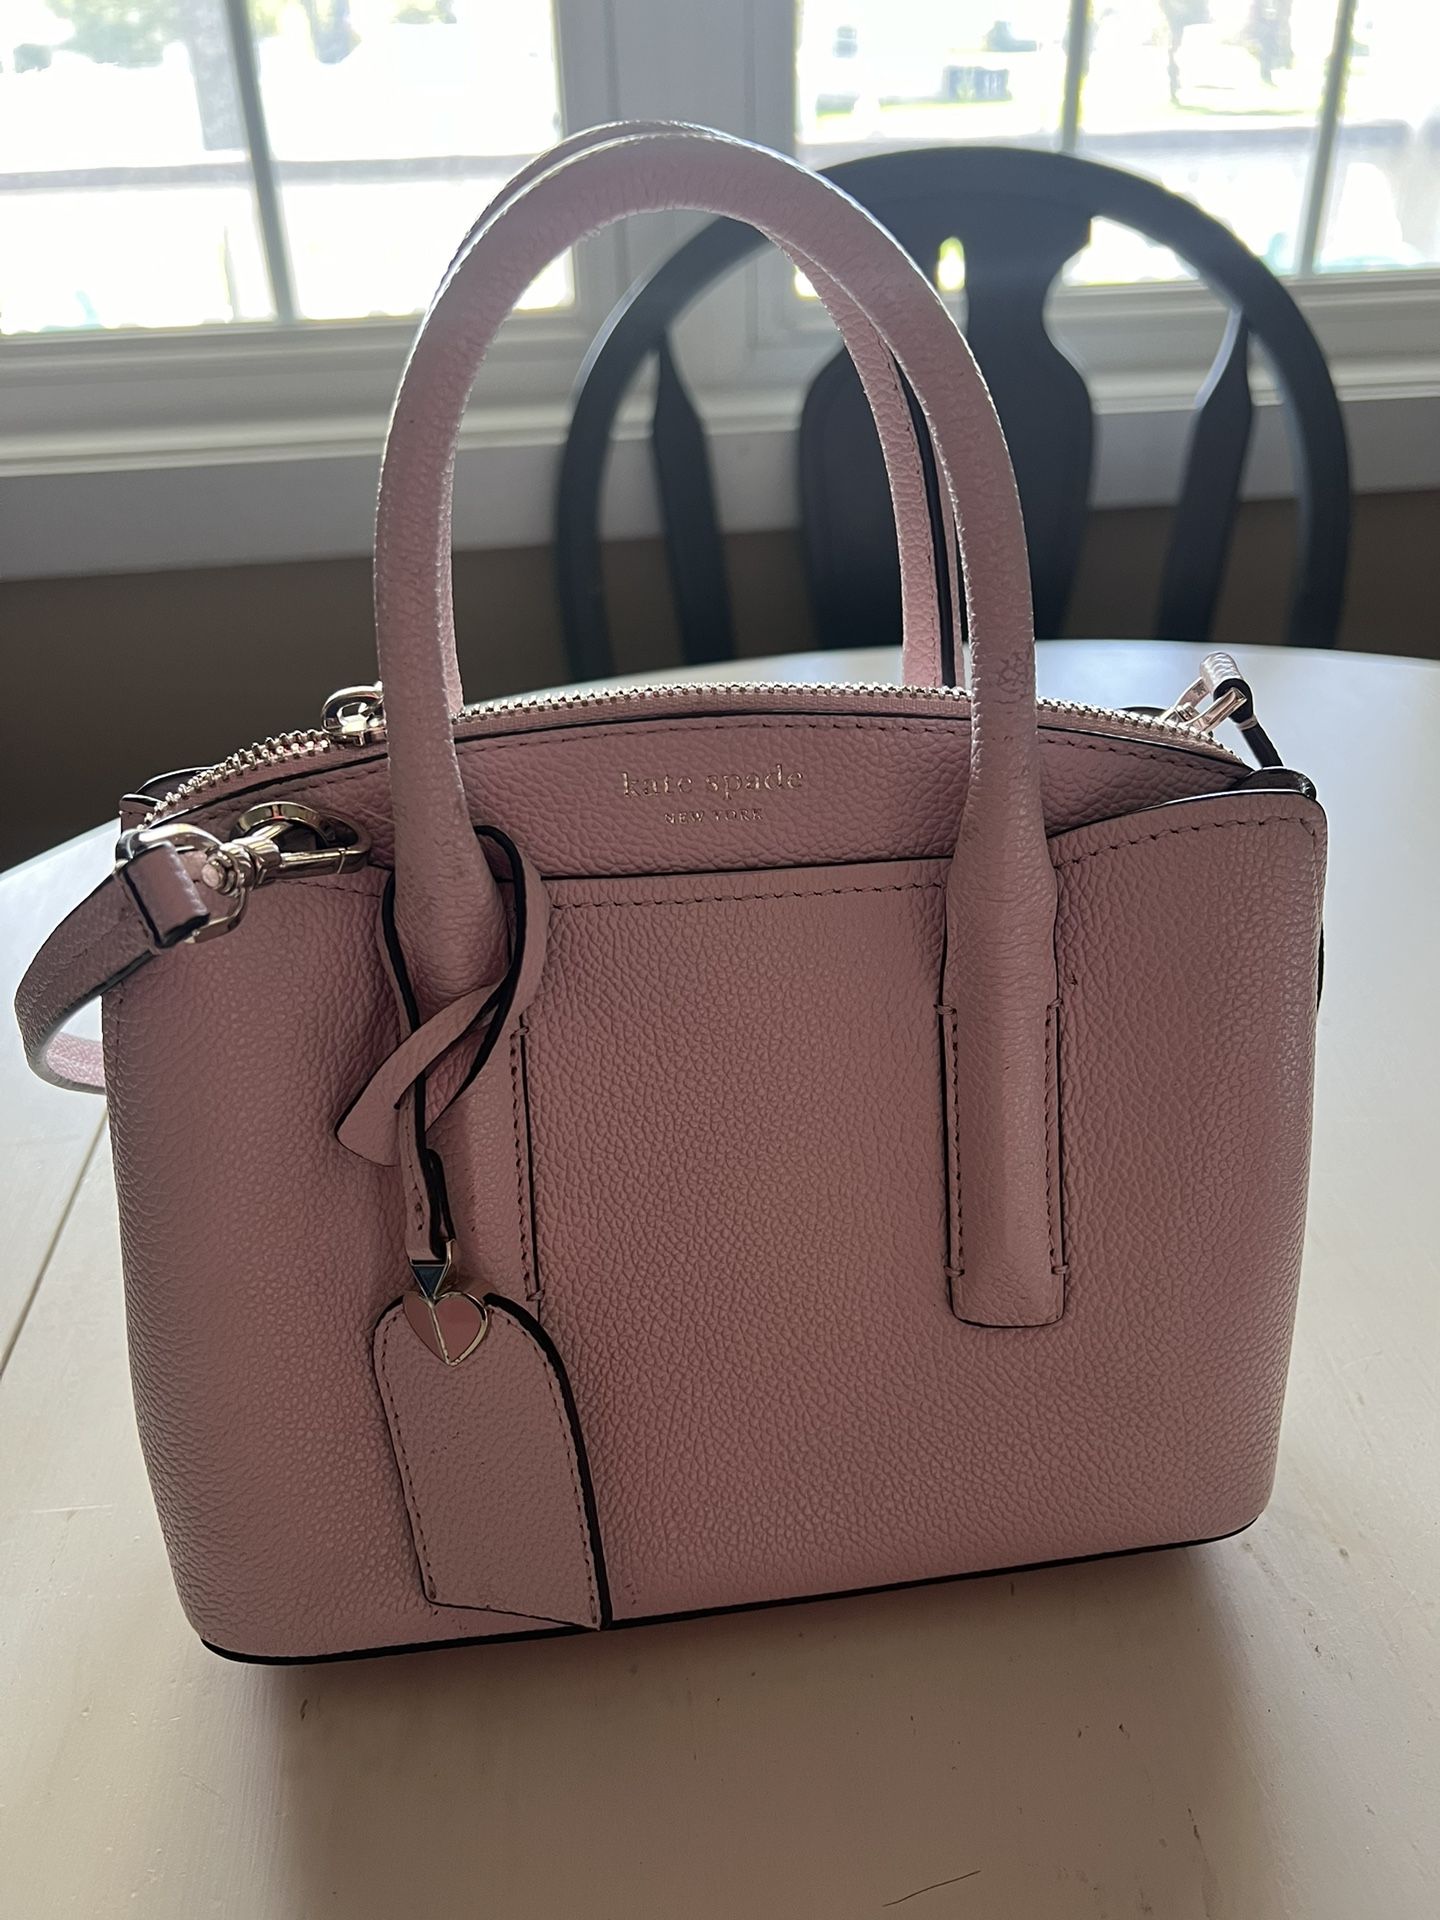 Kate Spade baby pink purse 